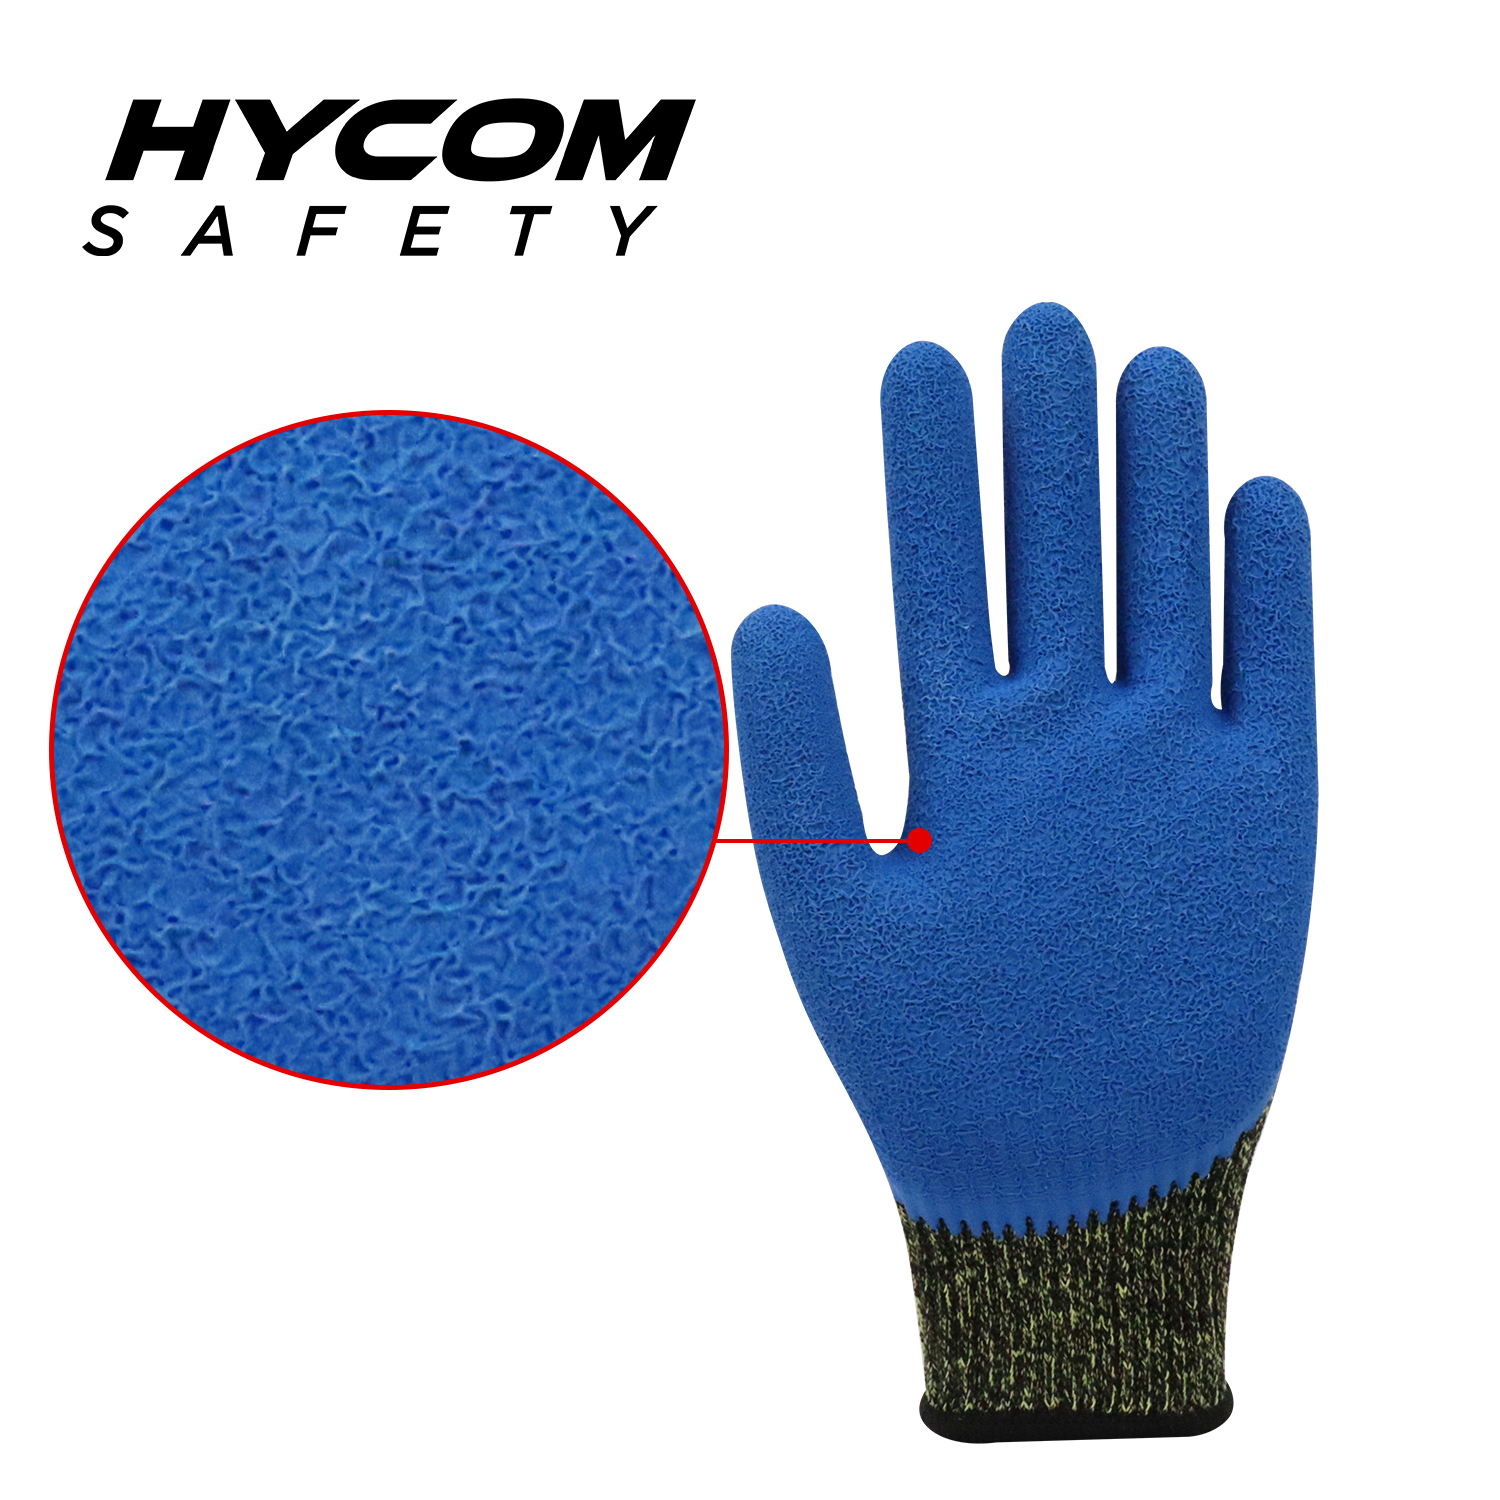 HYCOM Contacto de aramida 10G alta temperatura 250°C/480F resistente al corte con guante de látex arrugado